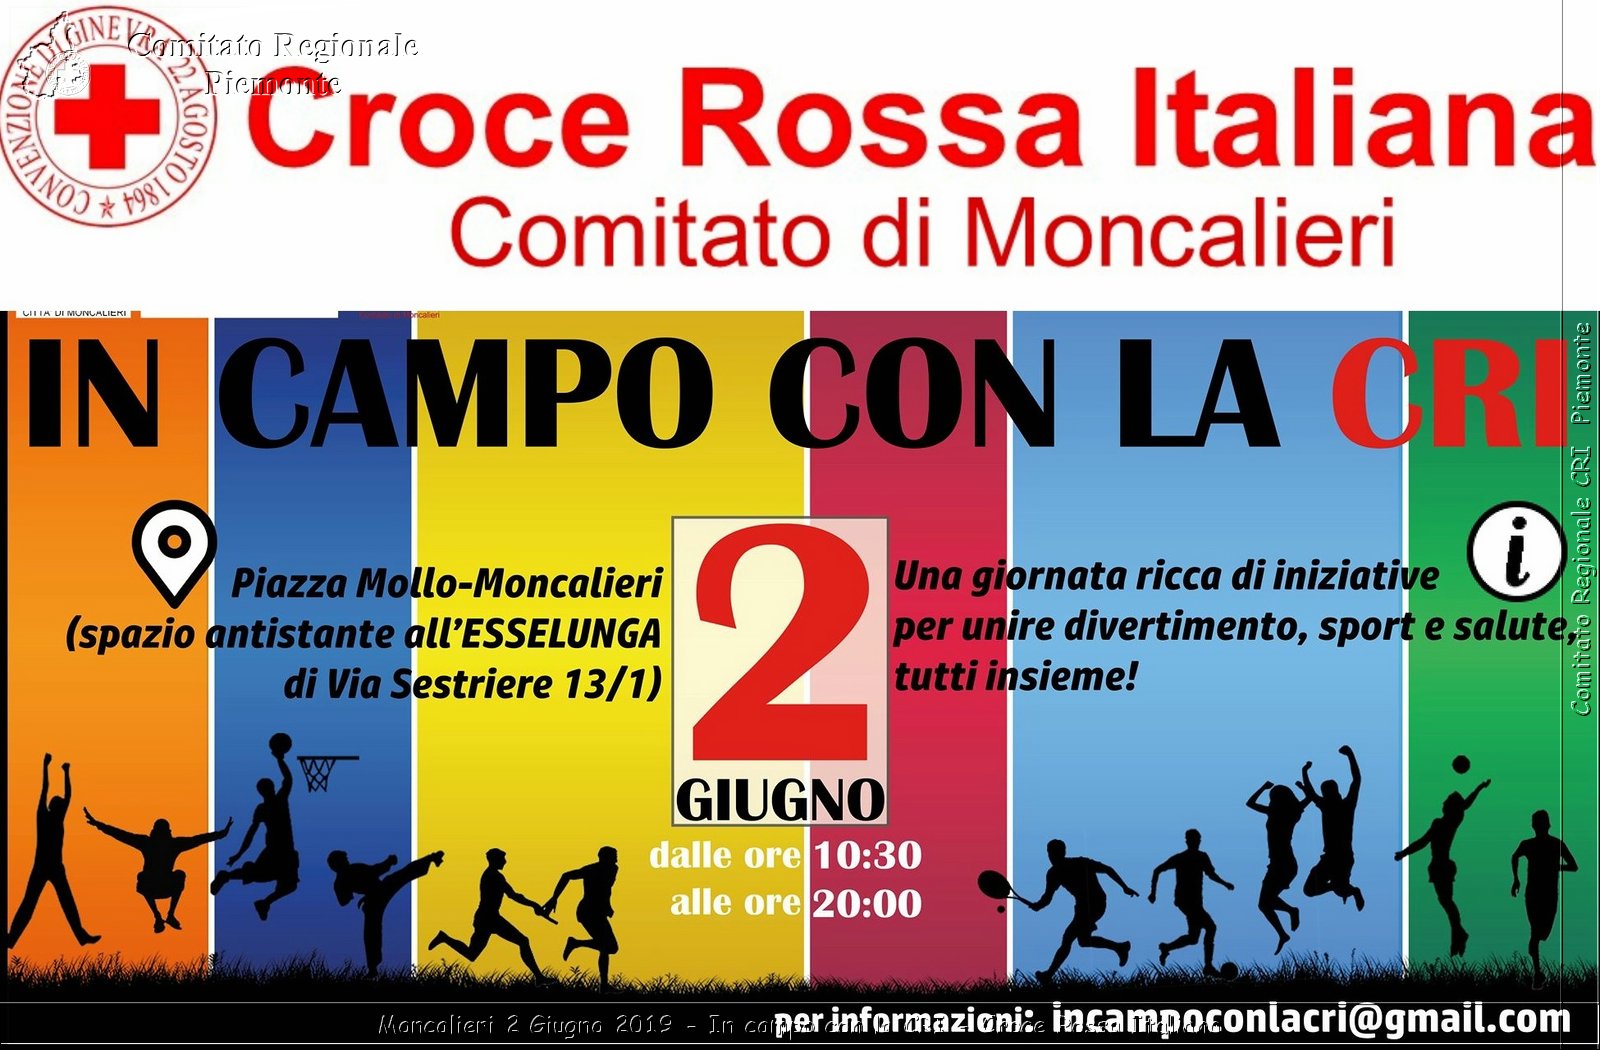 Moncalieri 2 Giugno 2019 - In campo con la CRI - Croce Rossa Italiana - Comitato Regionale del Piemonte